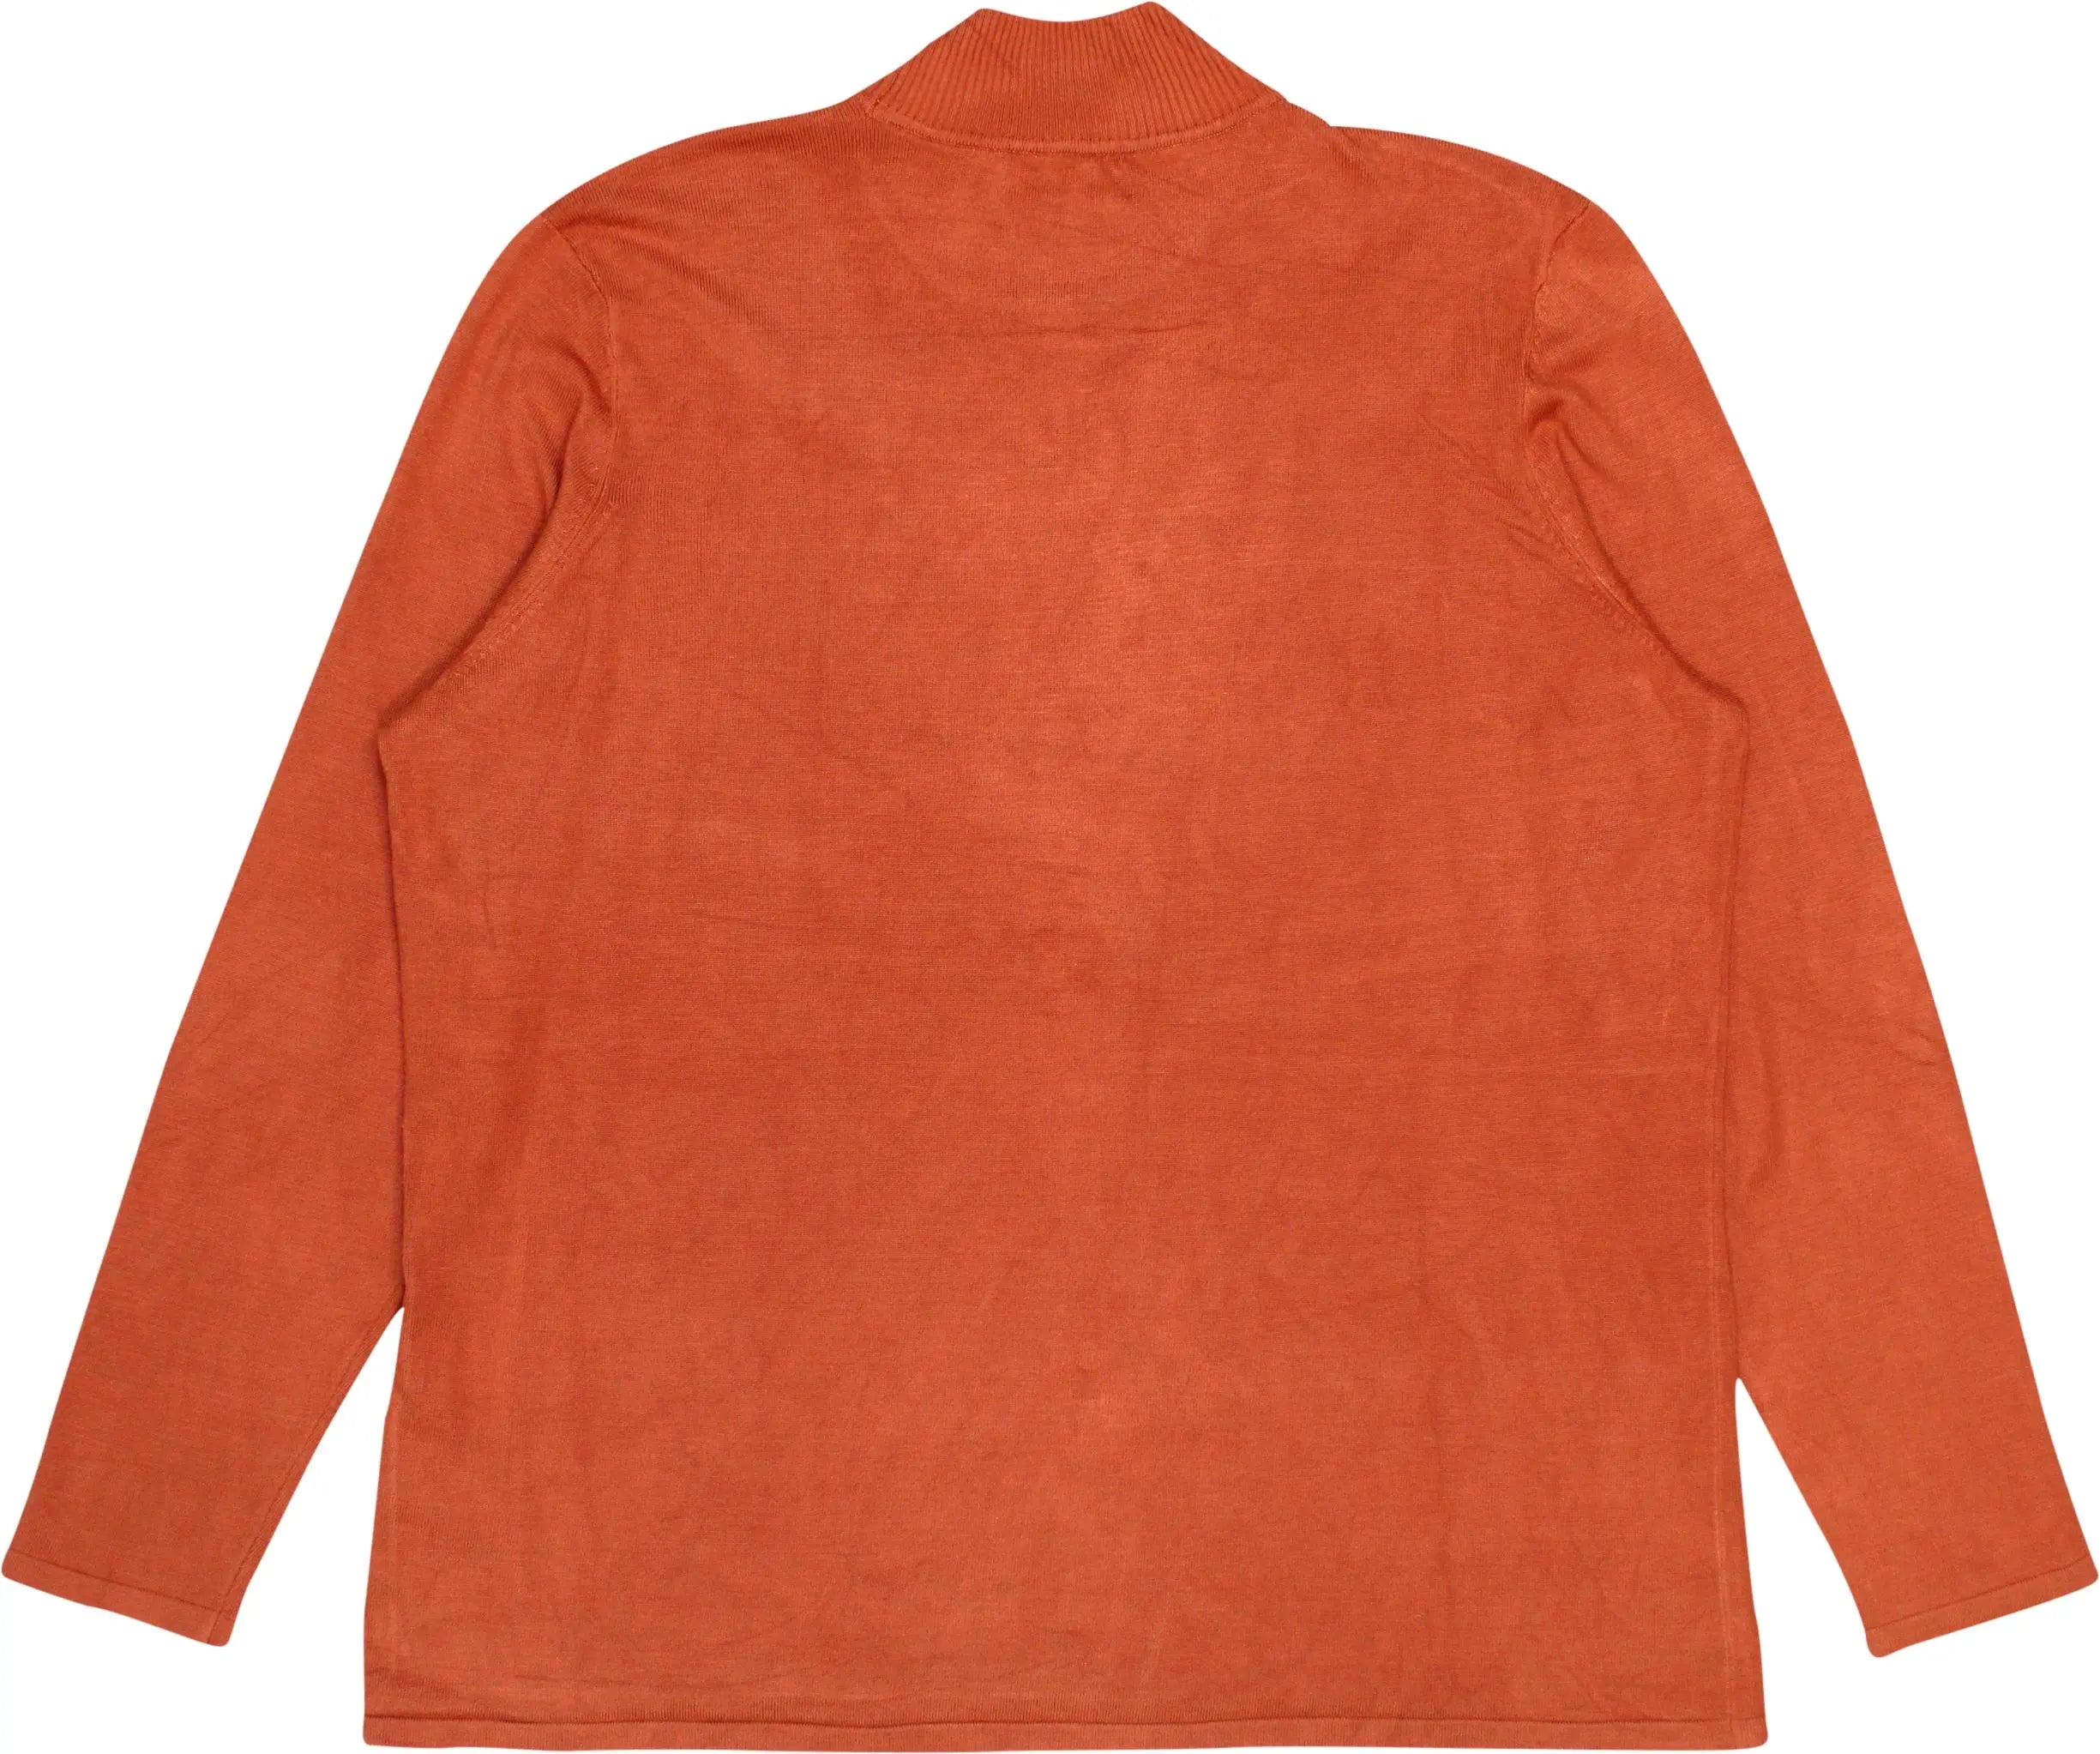 Setter - Plain Orange Turtleneck Jumper- ThriftTale.com - Vintage and second handclothing